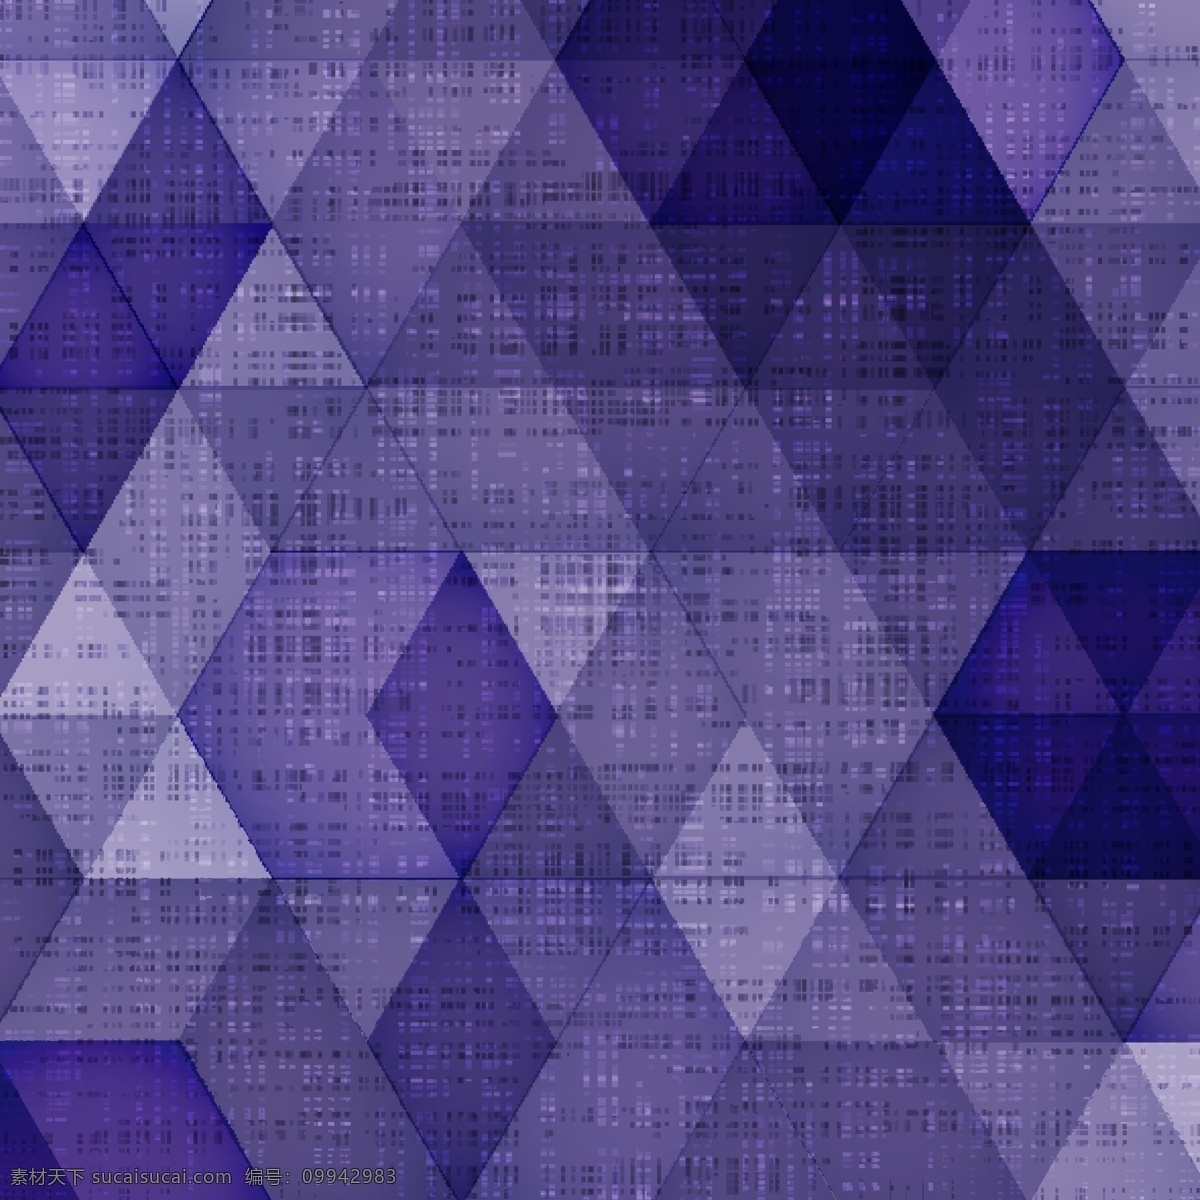 紫色三角格纹 背景矢量 菱形 三角形 背景 紫色 矢量图 eps格式 底纹边框 背景底纹